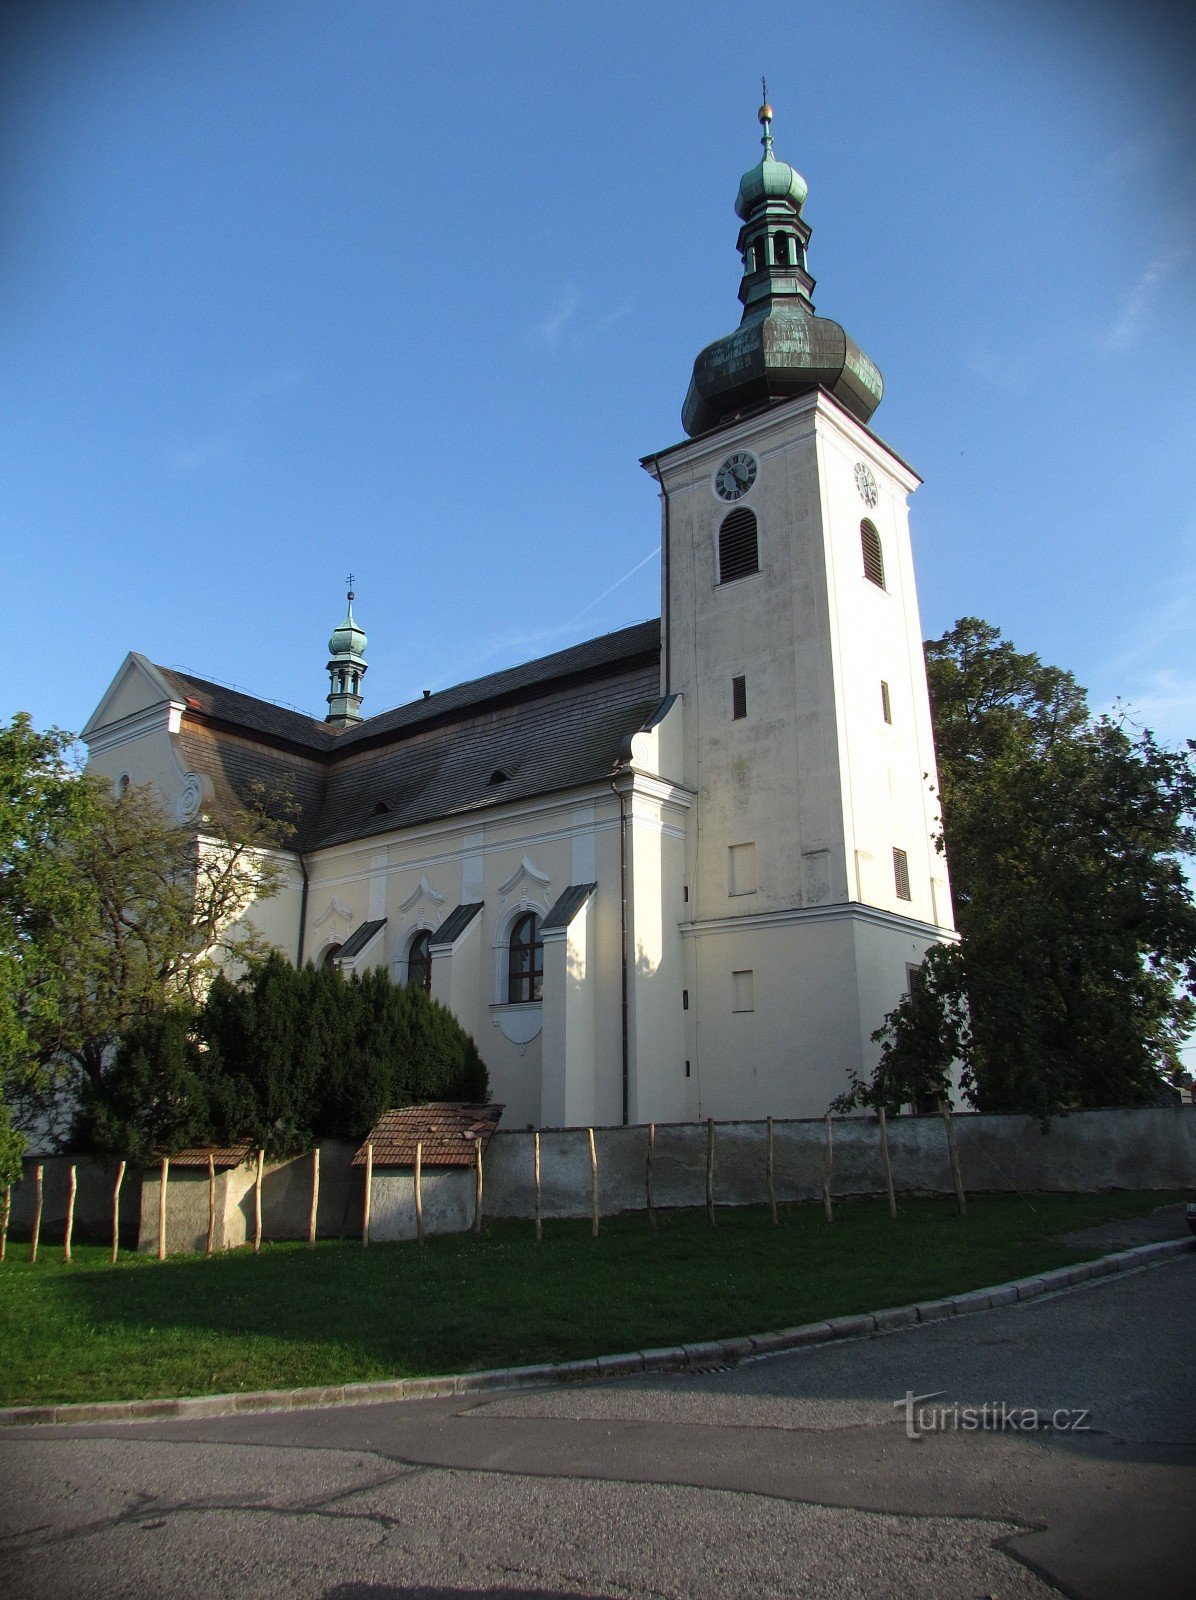 Náměstí Svobody în Buchlovice